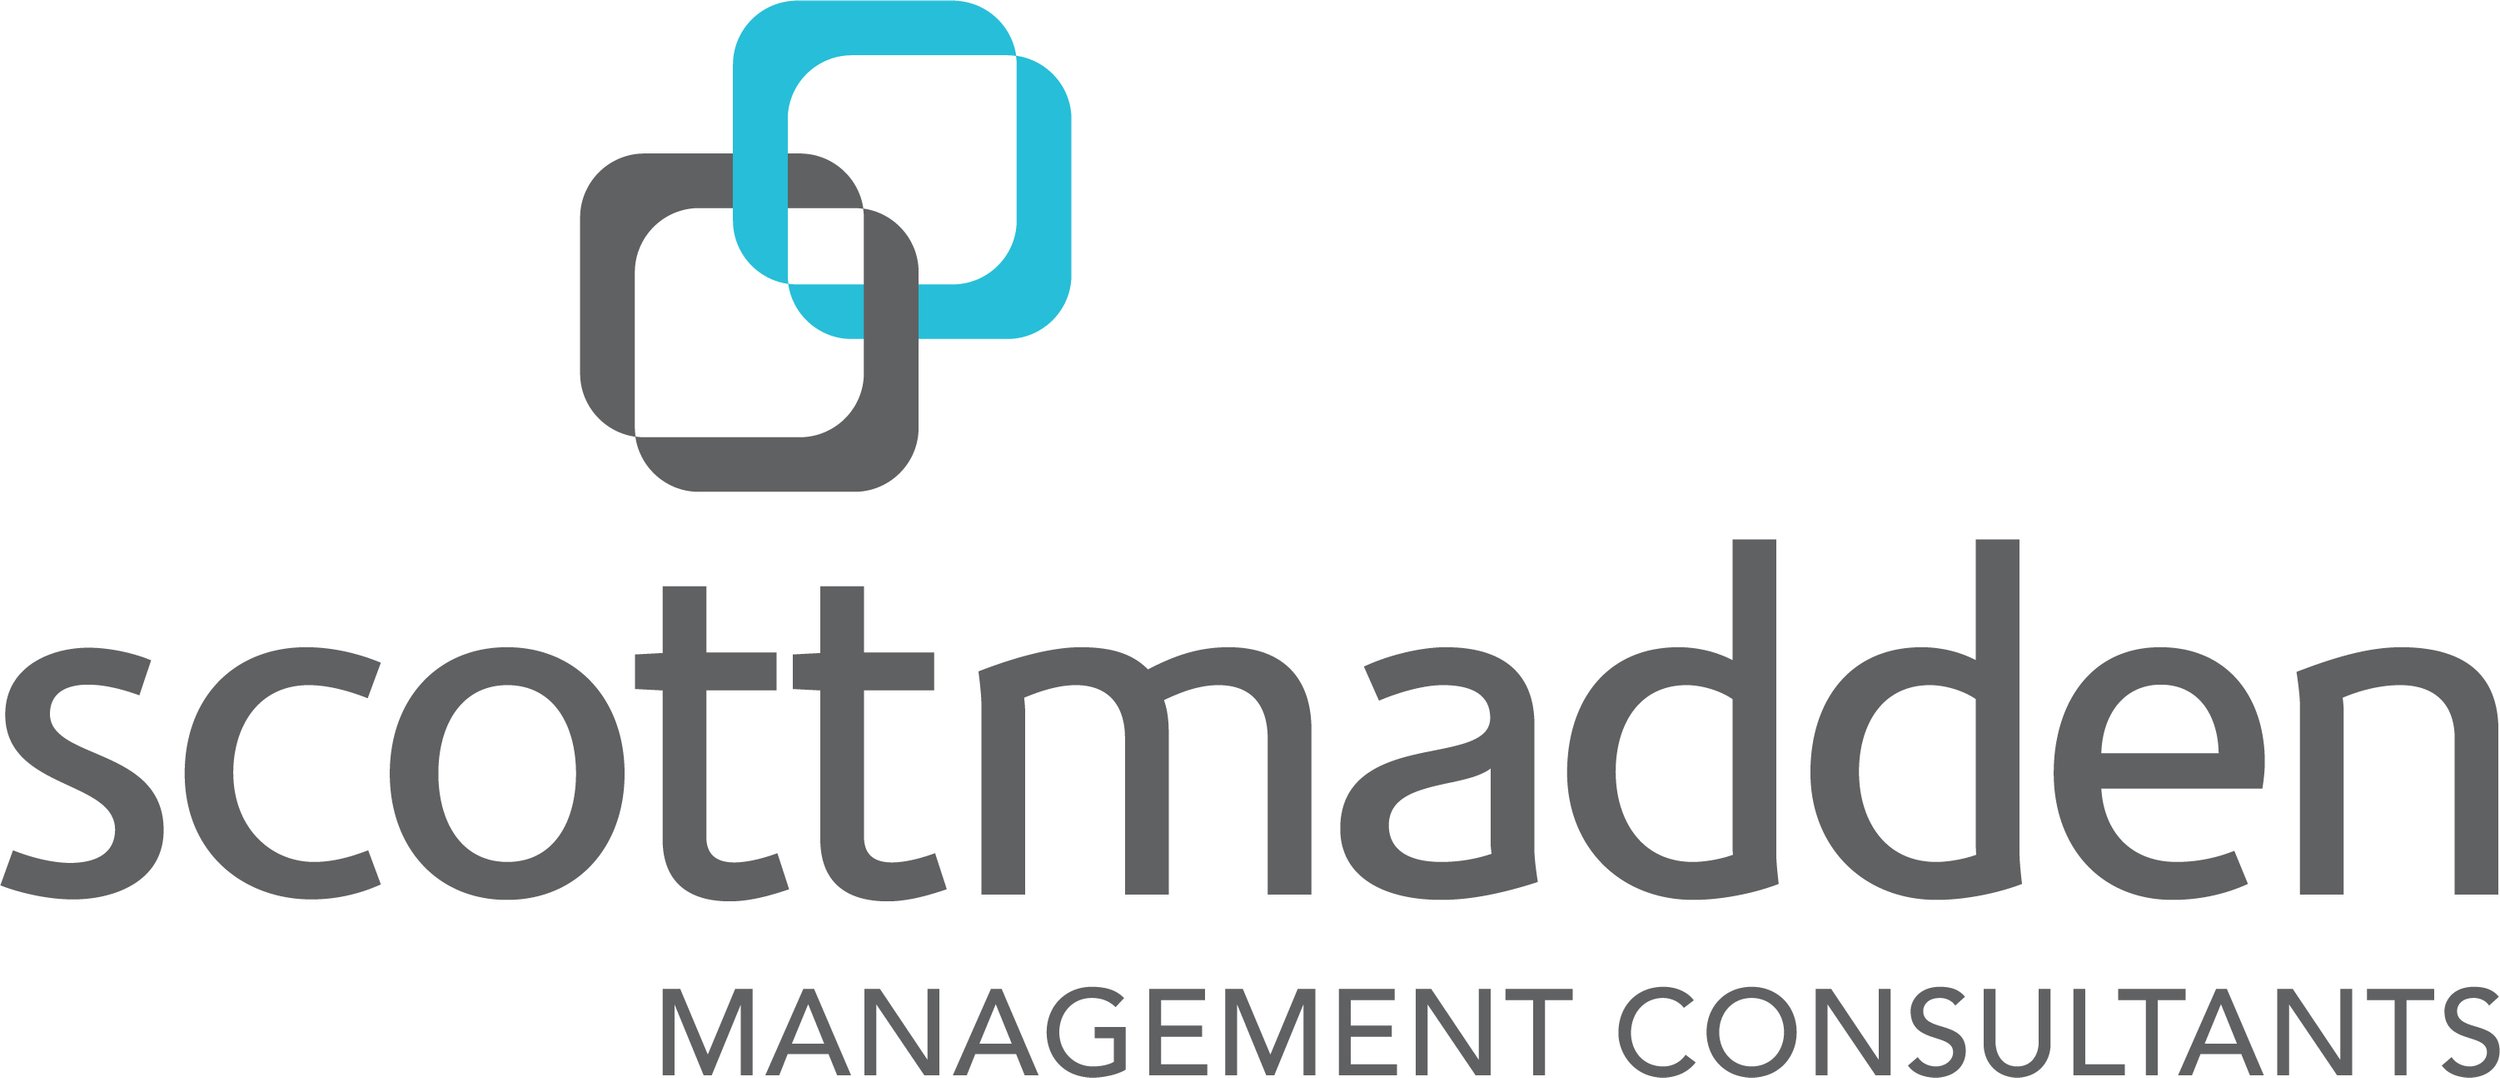 ScottMadden-Logo-Full-Color-RGB.jpg